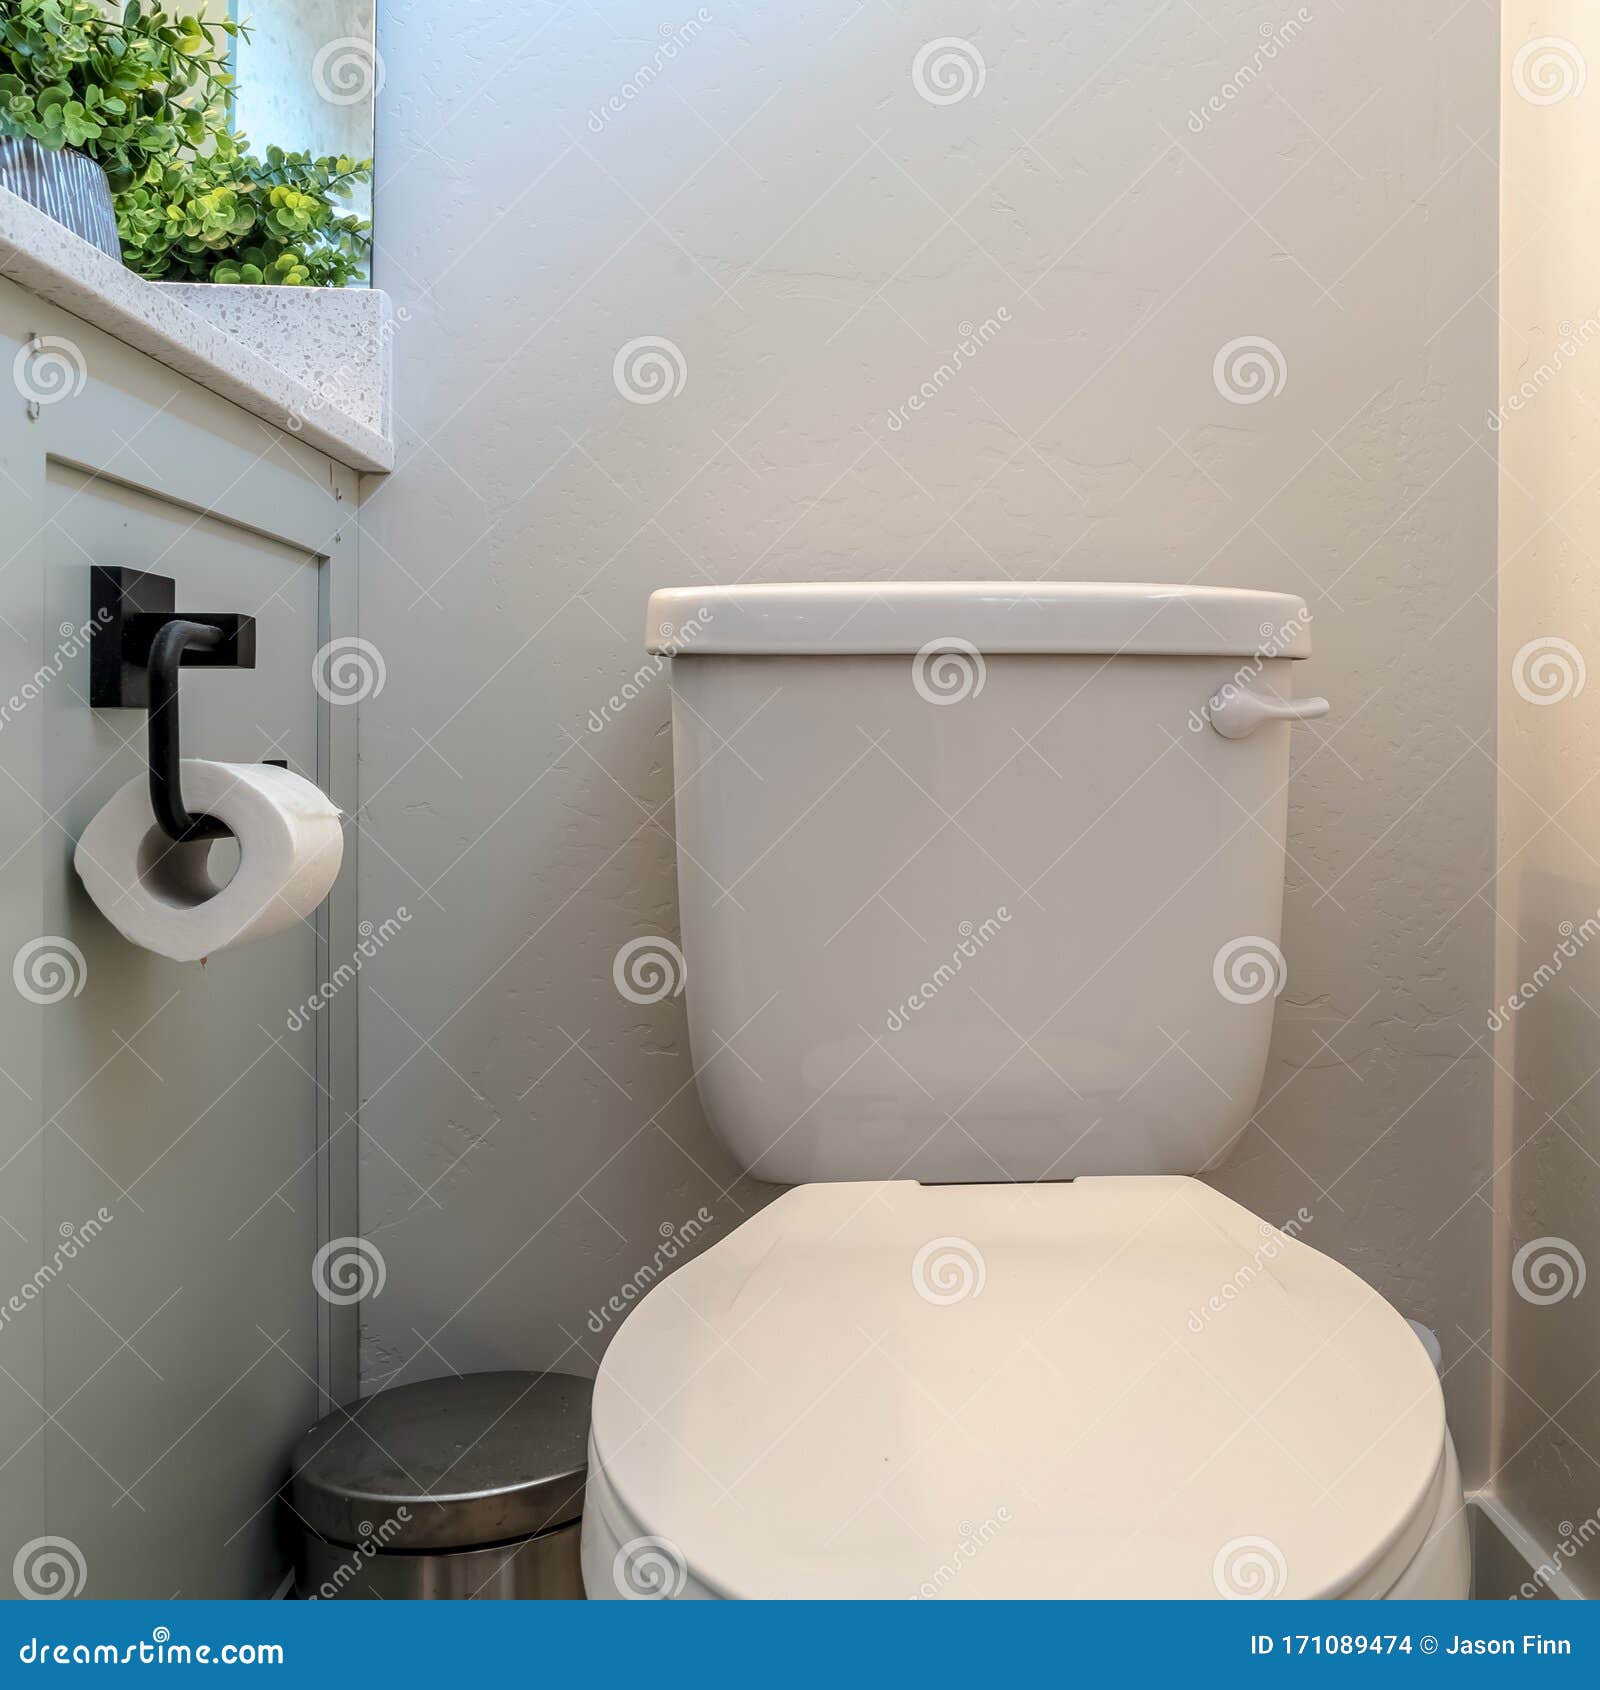 vallei Recensent Zenuw Square Toilet-vuilnisbak Met Weefselhouder Tegen Witte Wand Van De Badkamer  Stock Foto - Image of cabinetrie, kabinet: 171089474